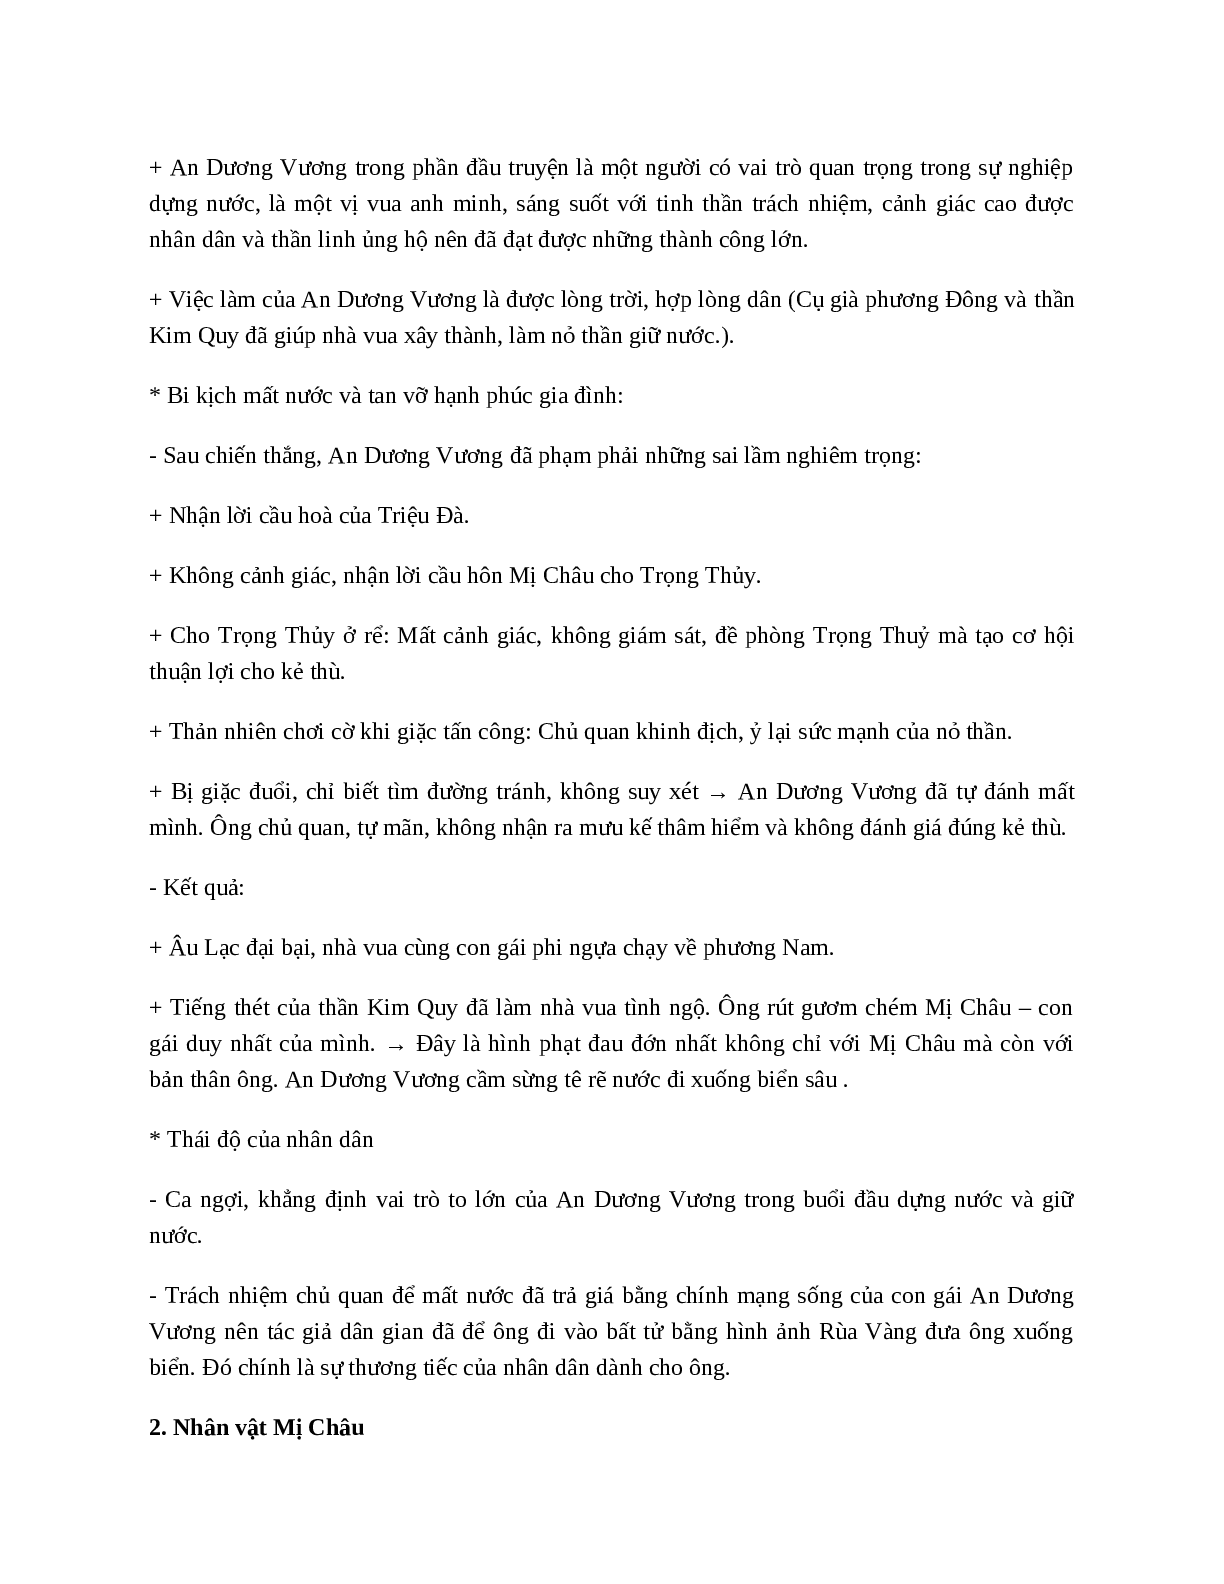 Truyện An Dương Vương và Mị Châu - Trọng Thủy - Tác giả tác phẩm - Ngữ văn lớp 10 (trang 4)